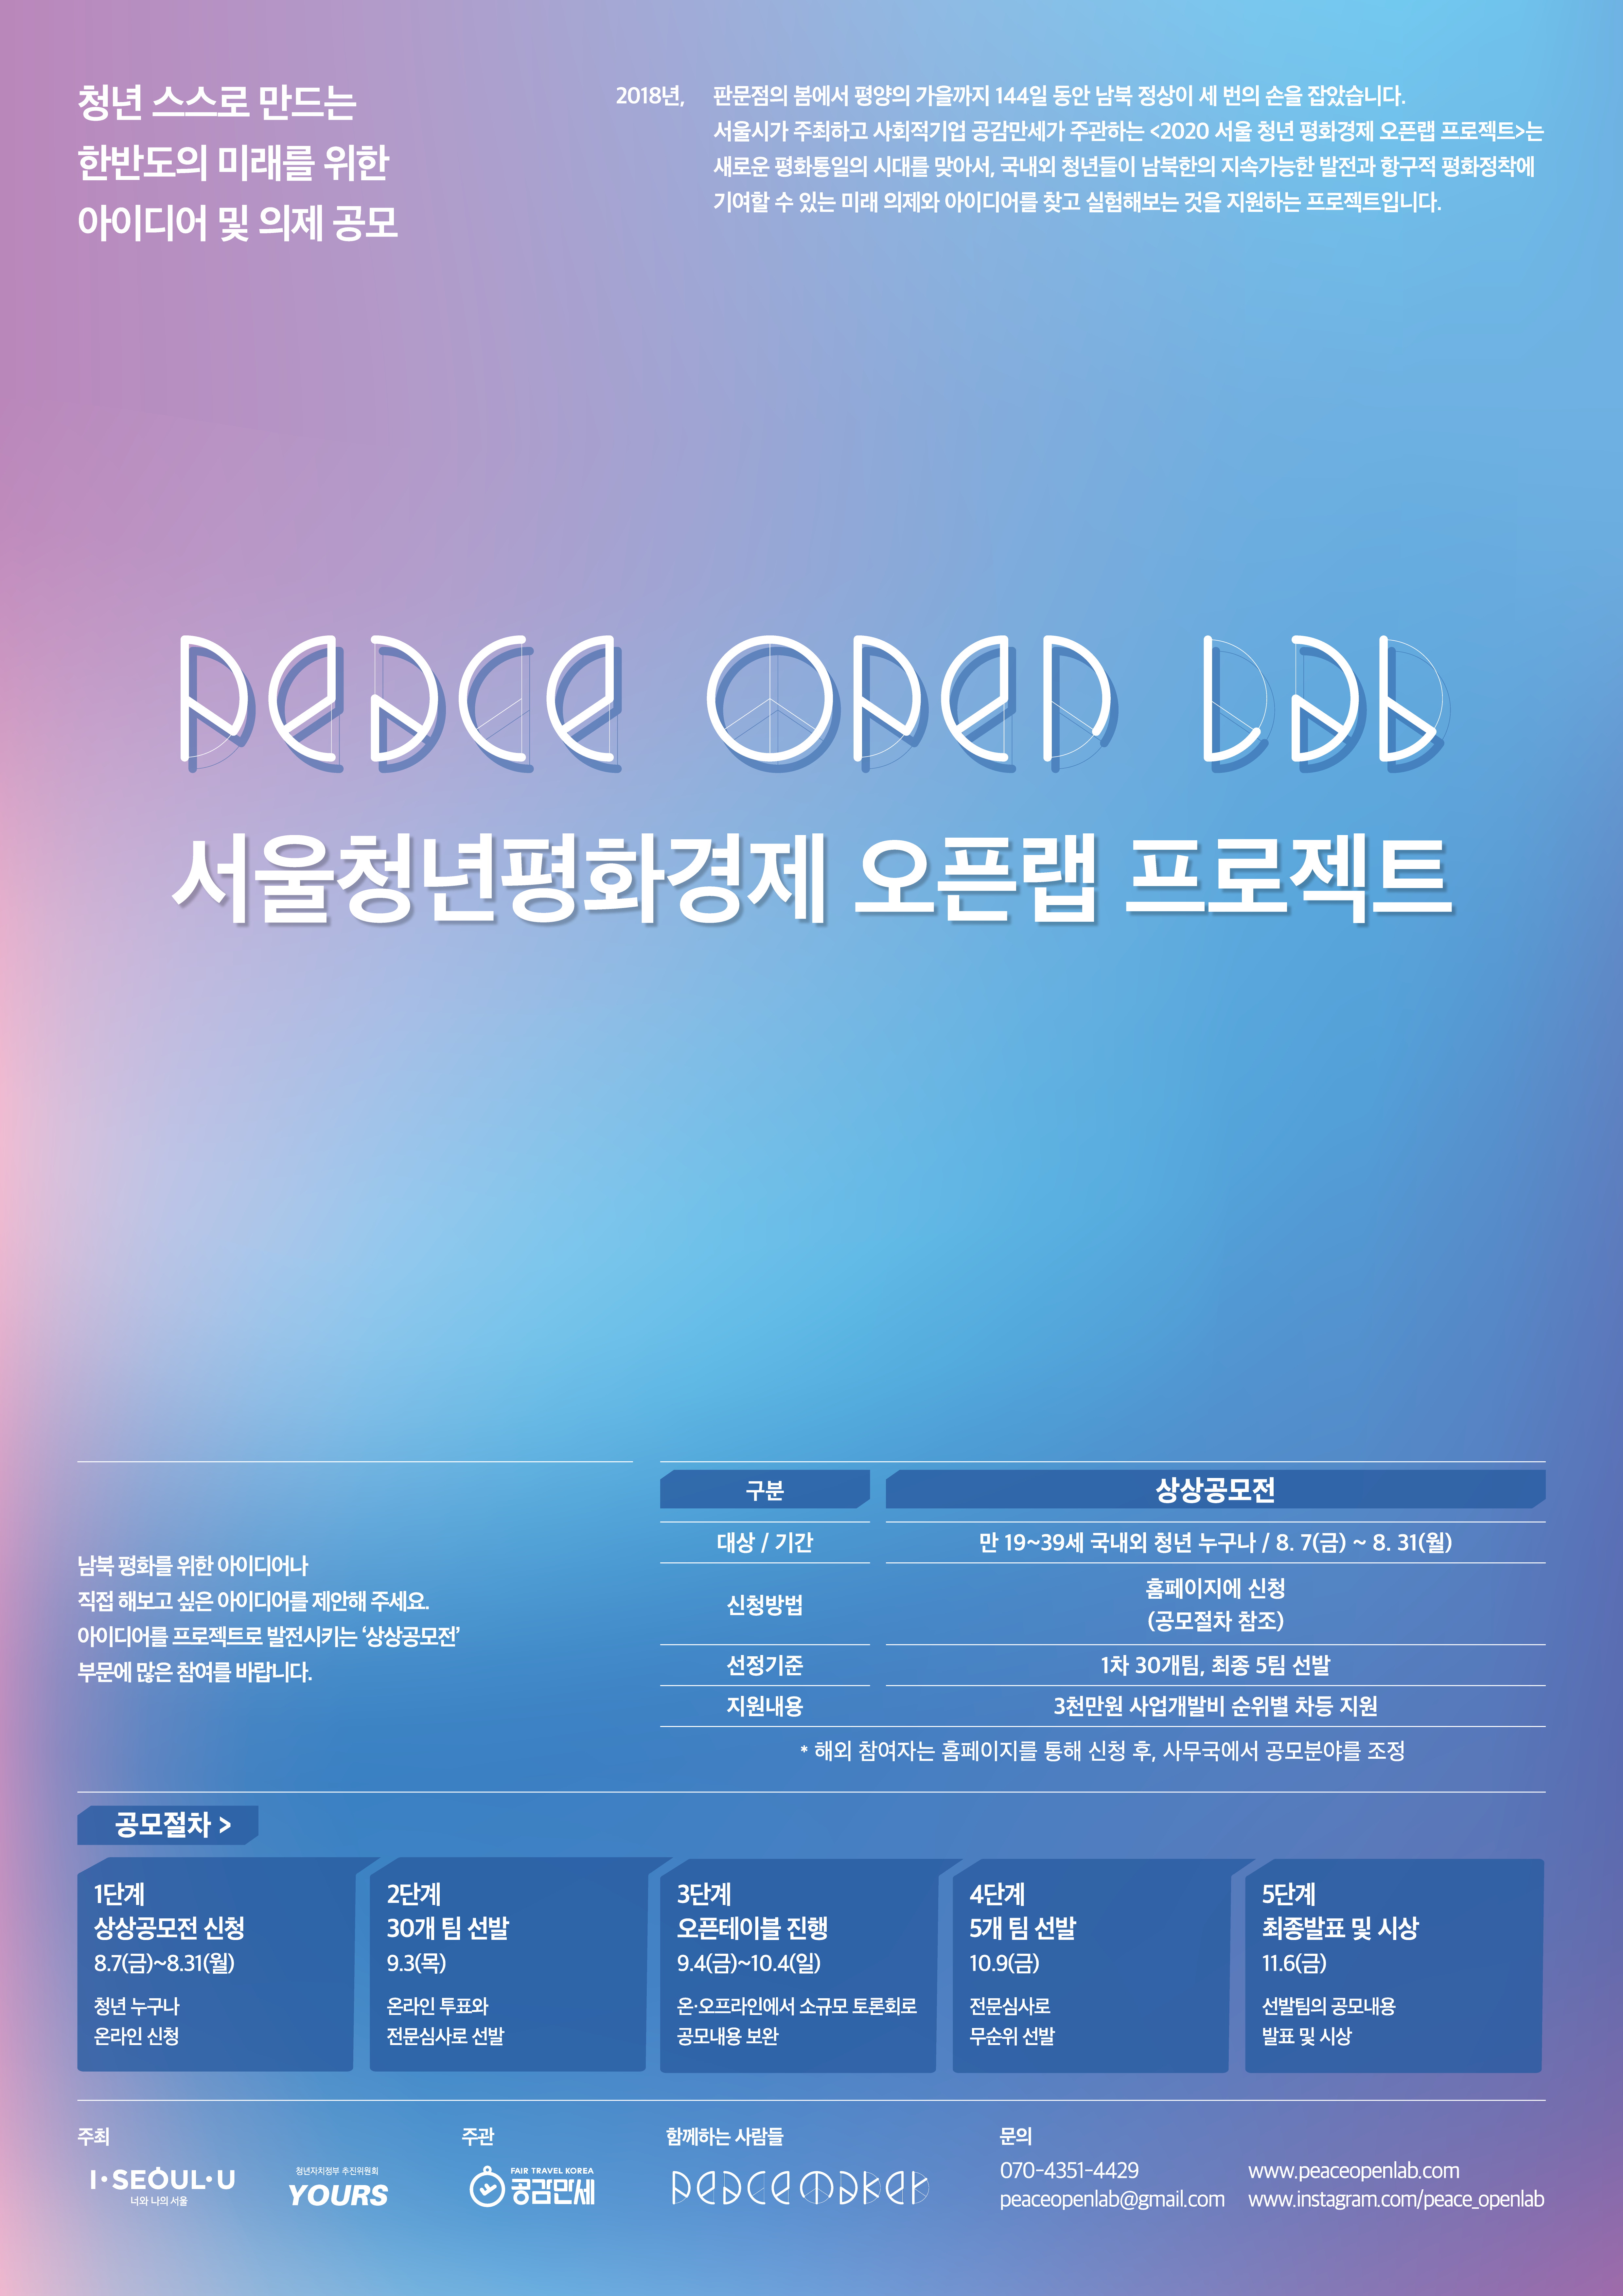 서울청년평화경제_오픈랩_프로젝트